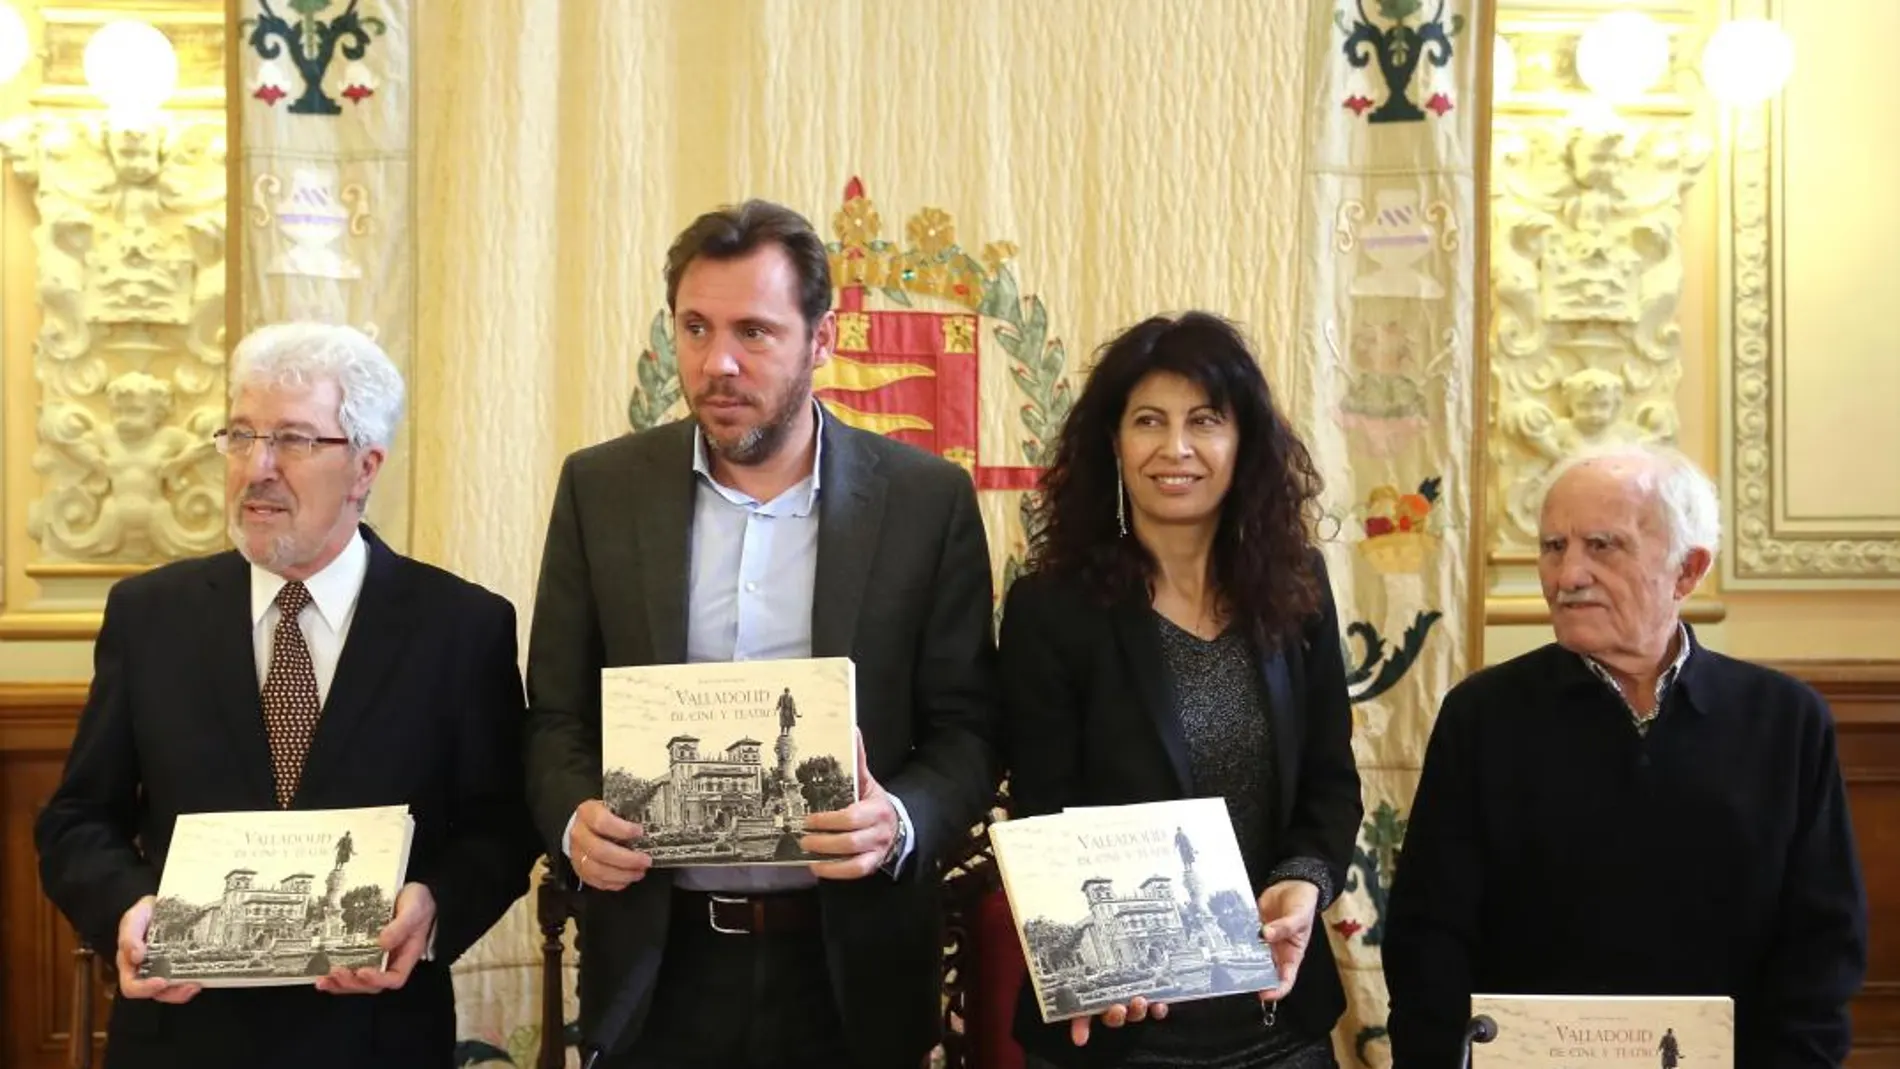 El pintor Miguel Ángel Soria, junto al alcalde Óscar Puente, la concejala Ana Redondo y el crítico Fernando Herrero